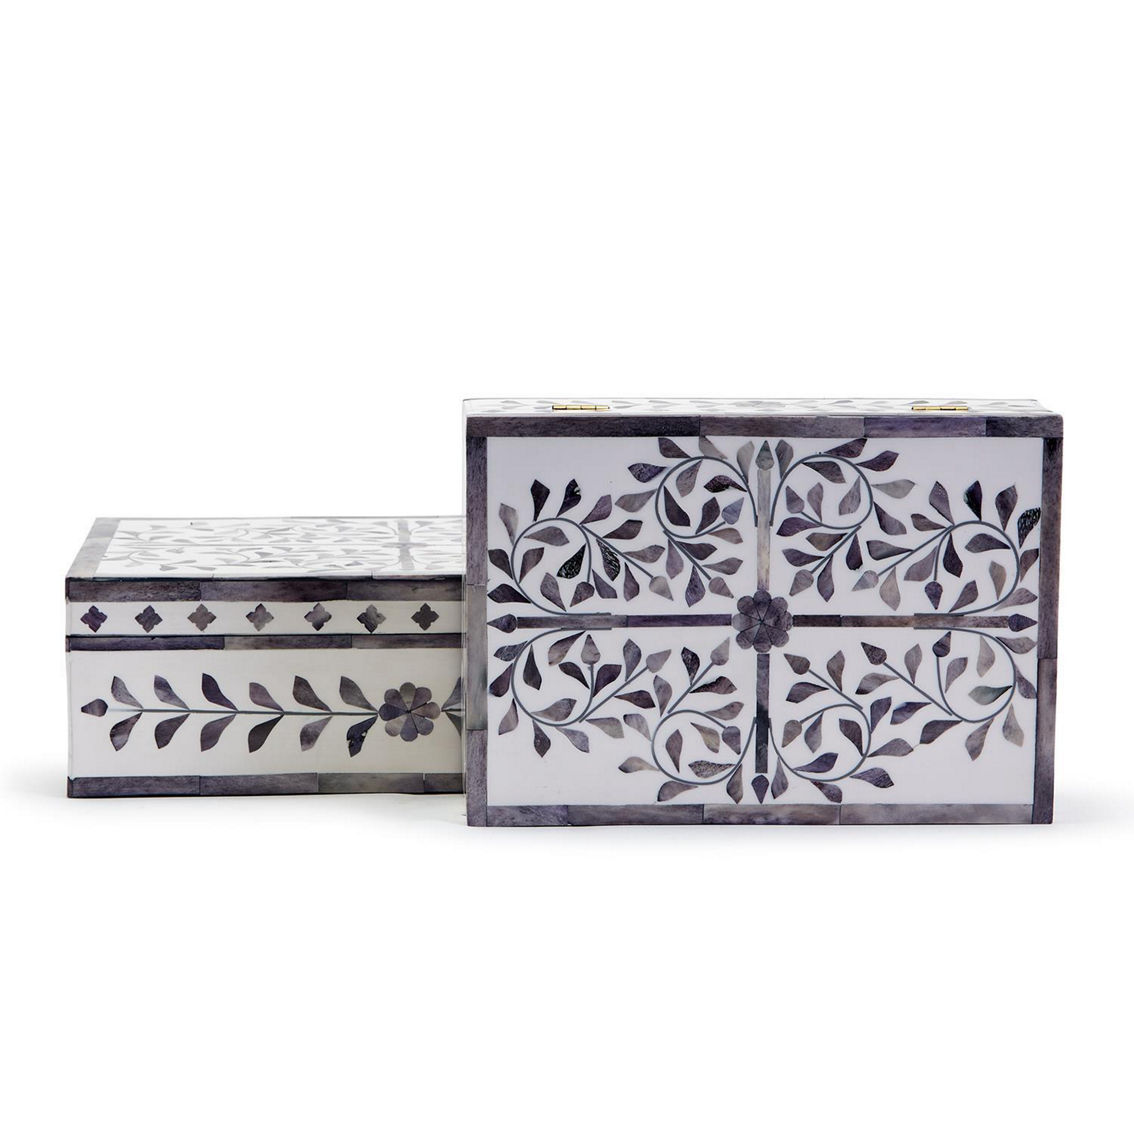 Tozai Jaipur Palace S/2 Hinged Boxes - Image 3 of 4